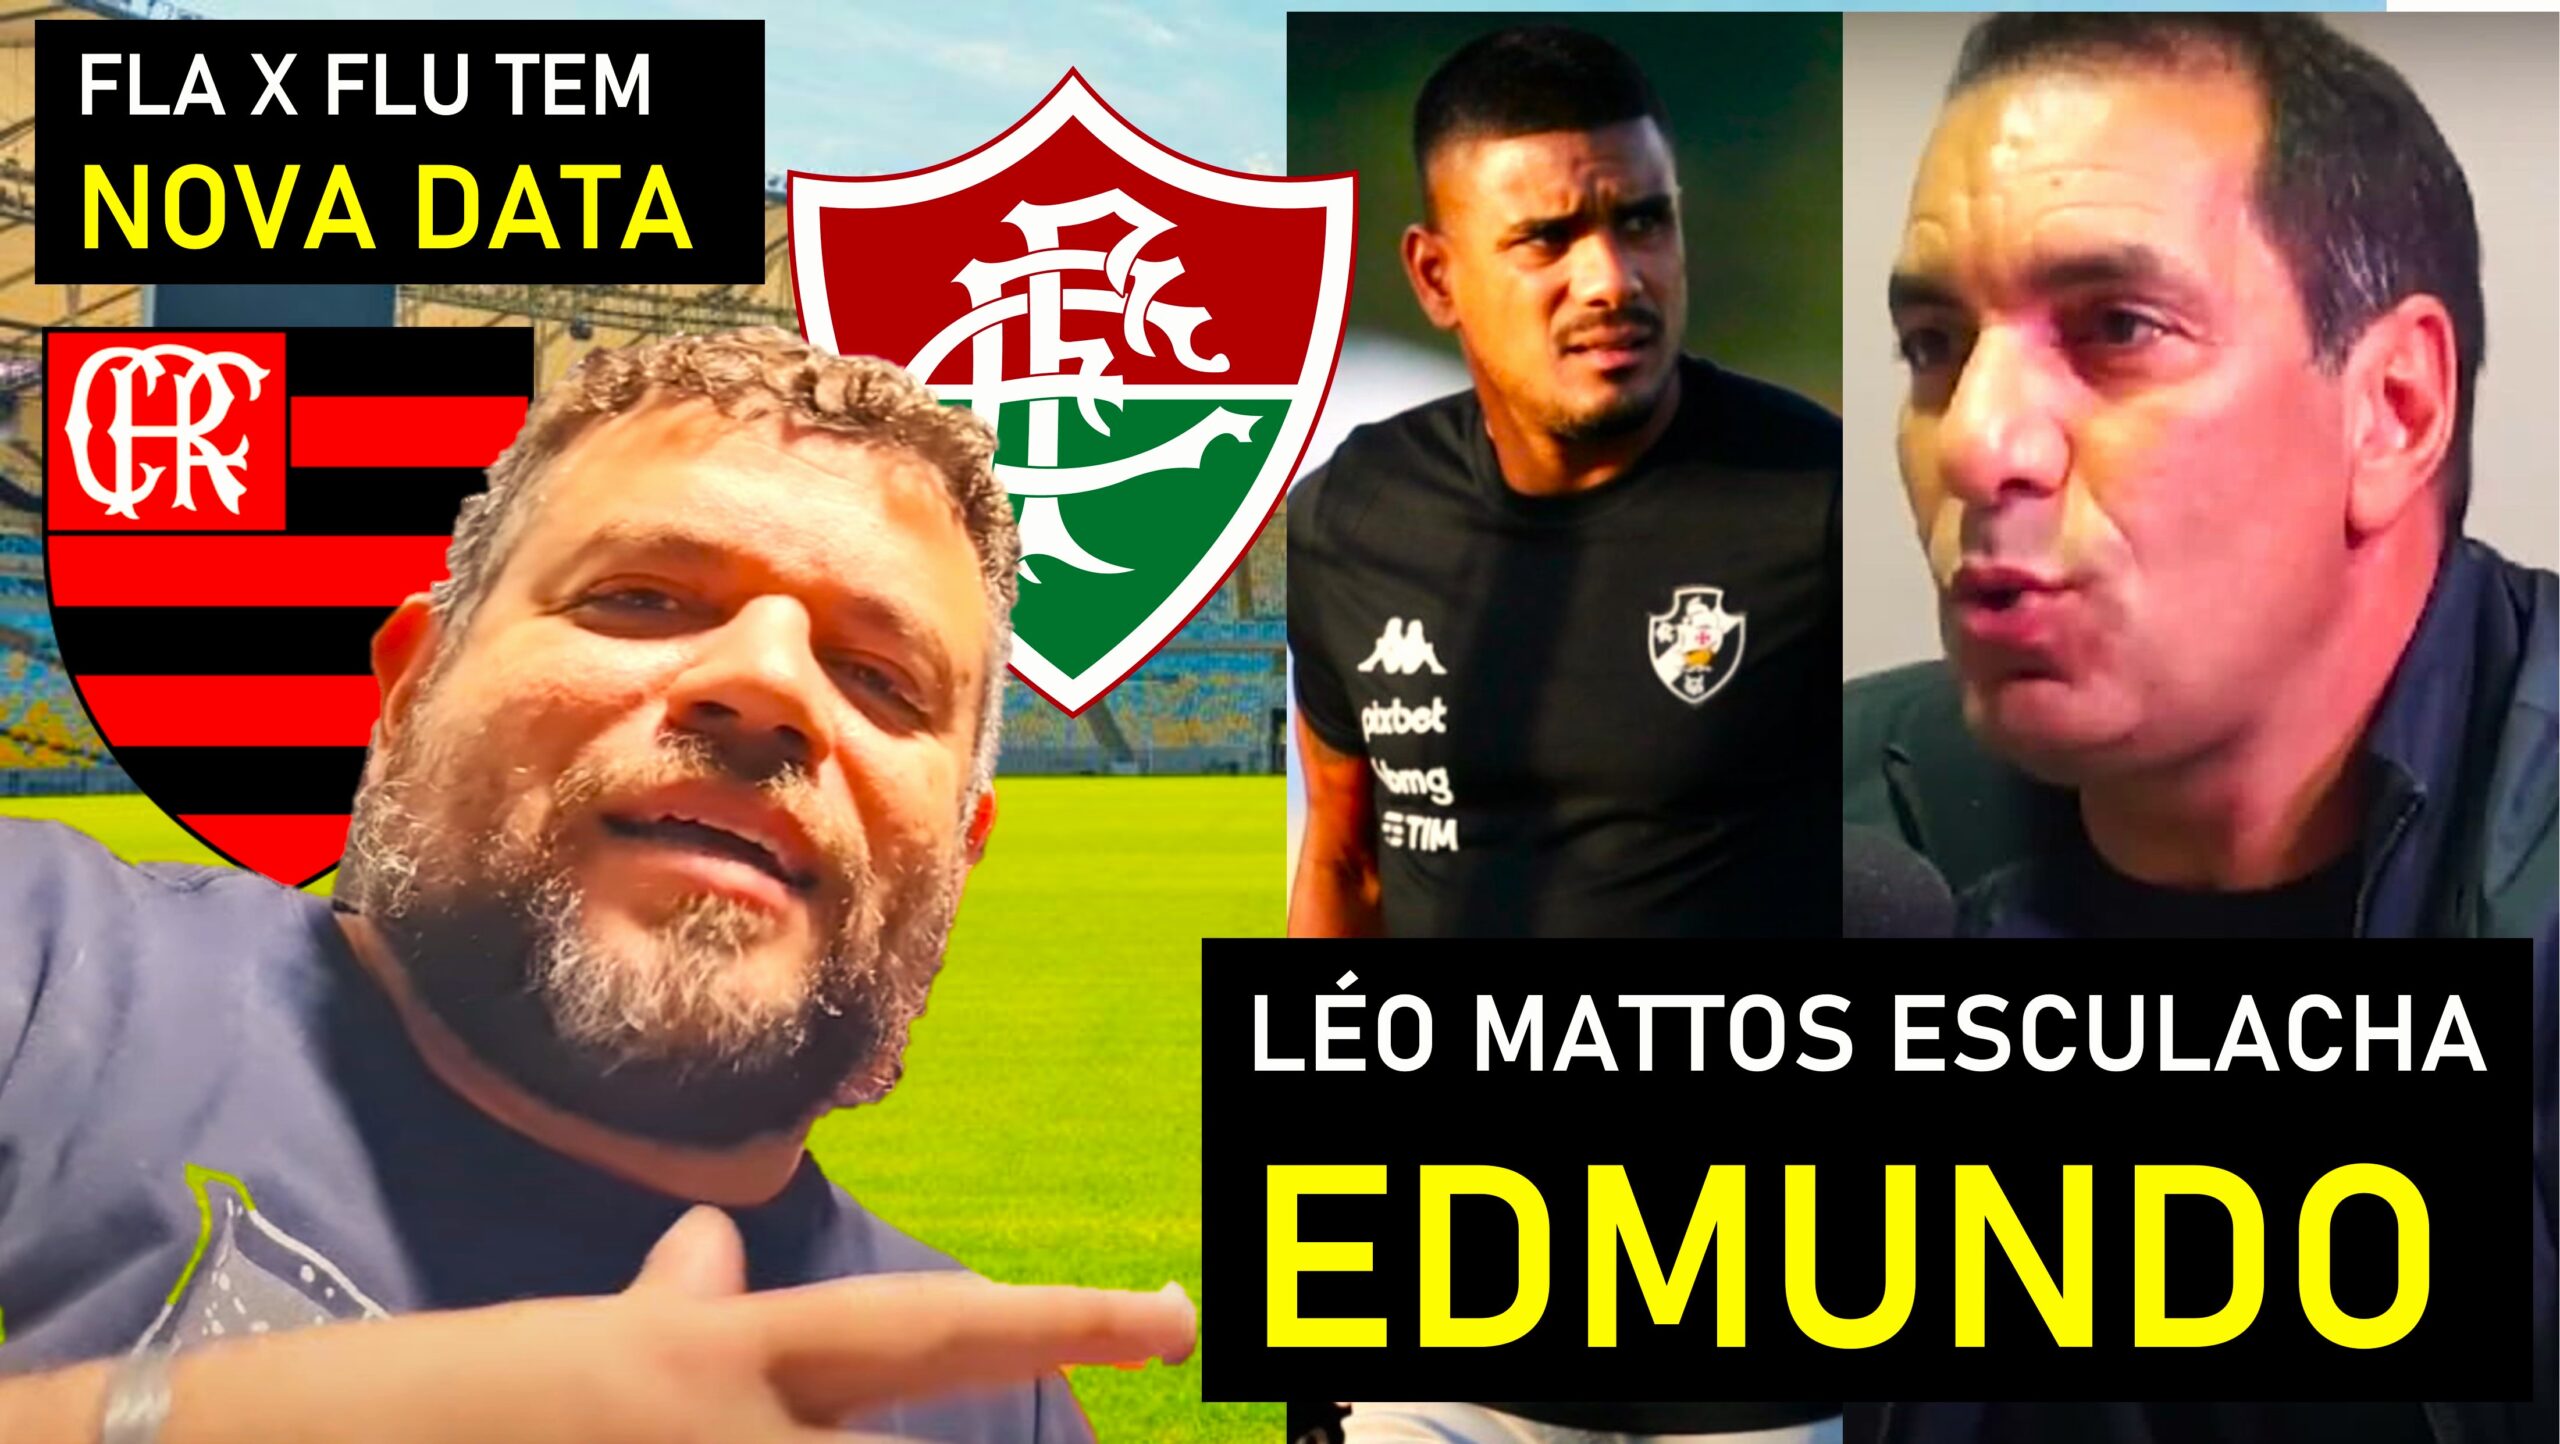 Rafael Moura reestreia canal no Youtube falando de futebol